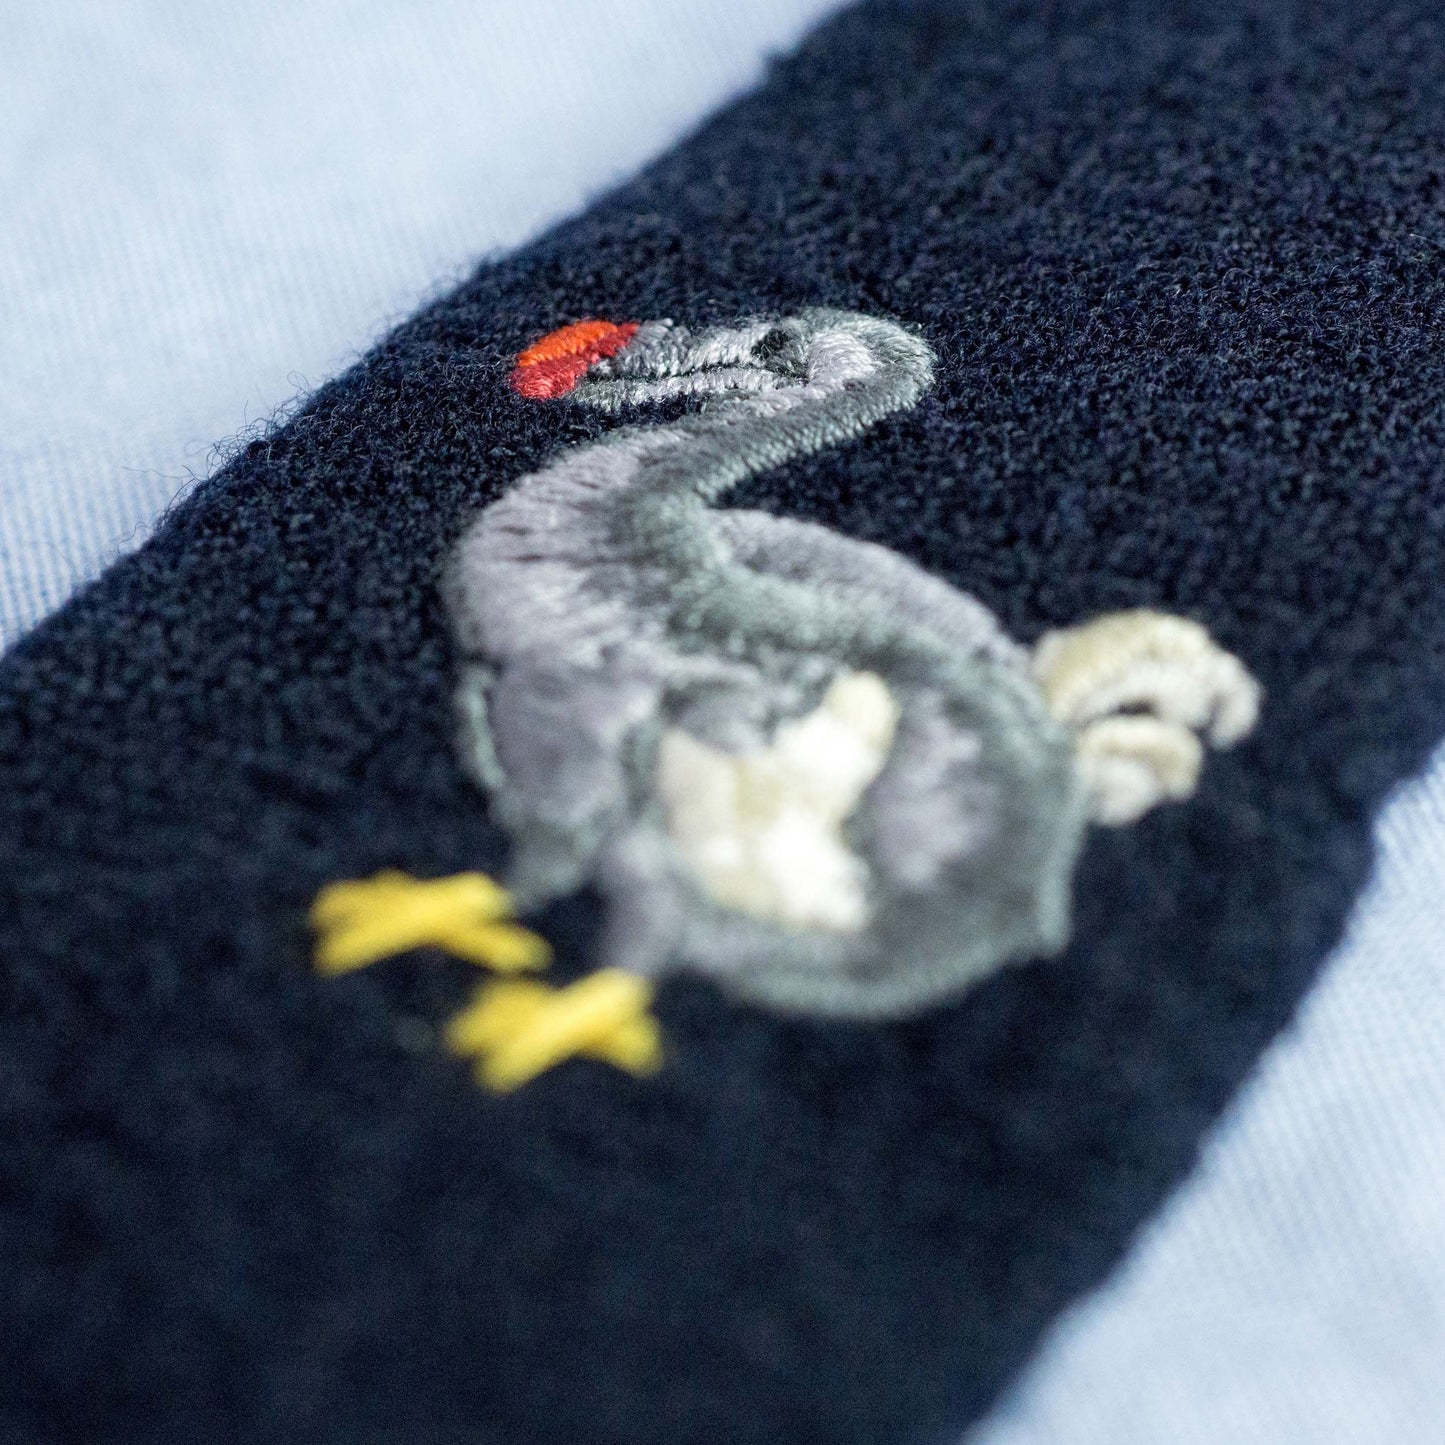 Japanese Wool Necktie (Dodo Tie)